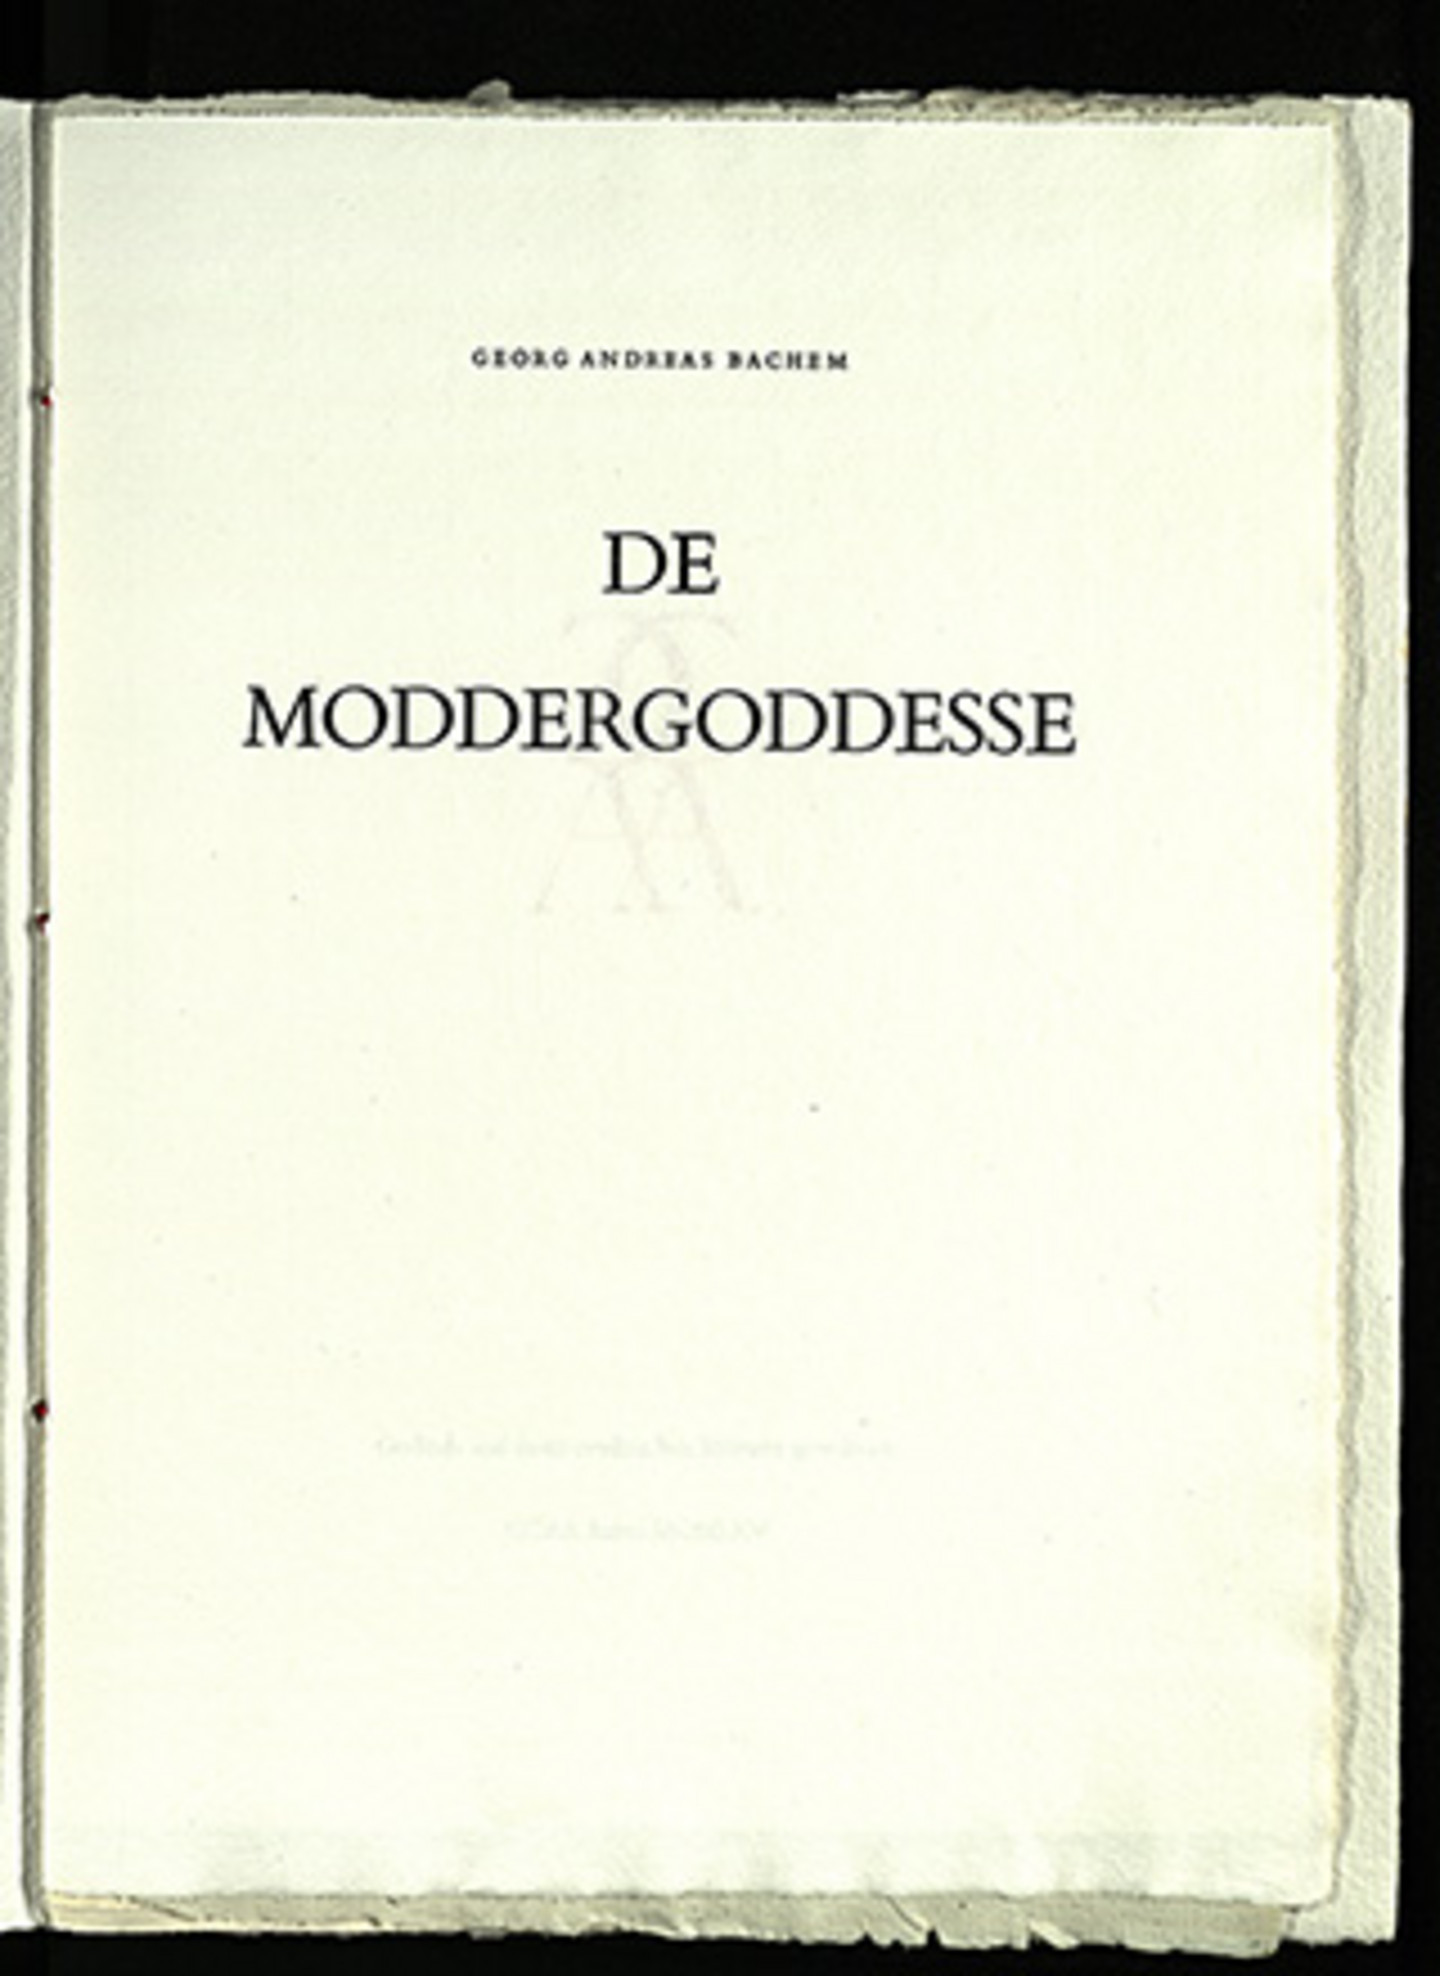 Ein Foto von bachem'scher Lyrik. Das Titelblatt trägt den Titel "De Moddergoddesse - Georg Andreas Bachem".